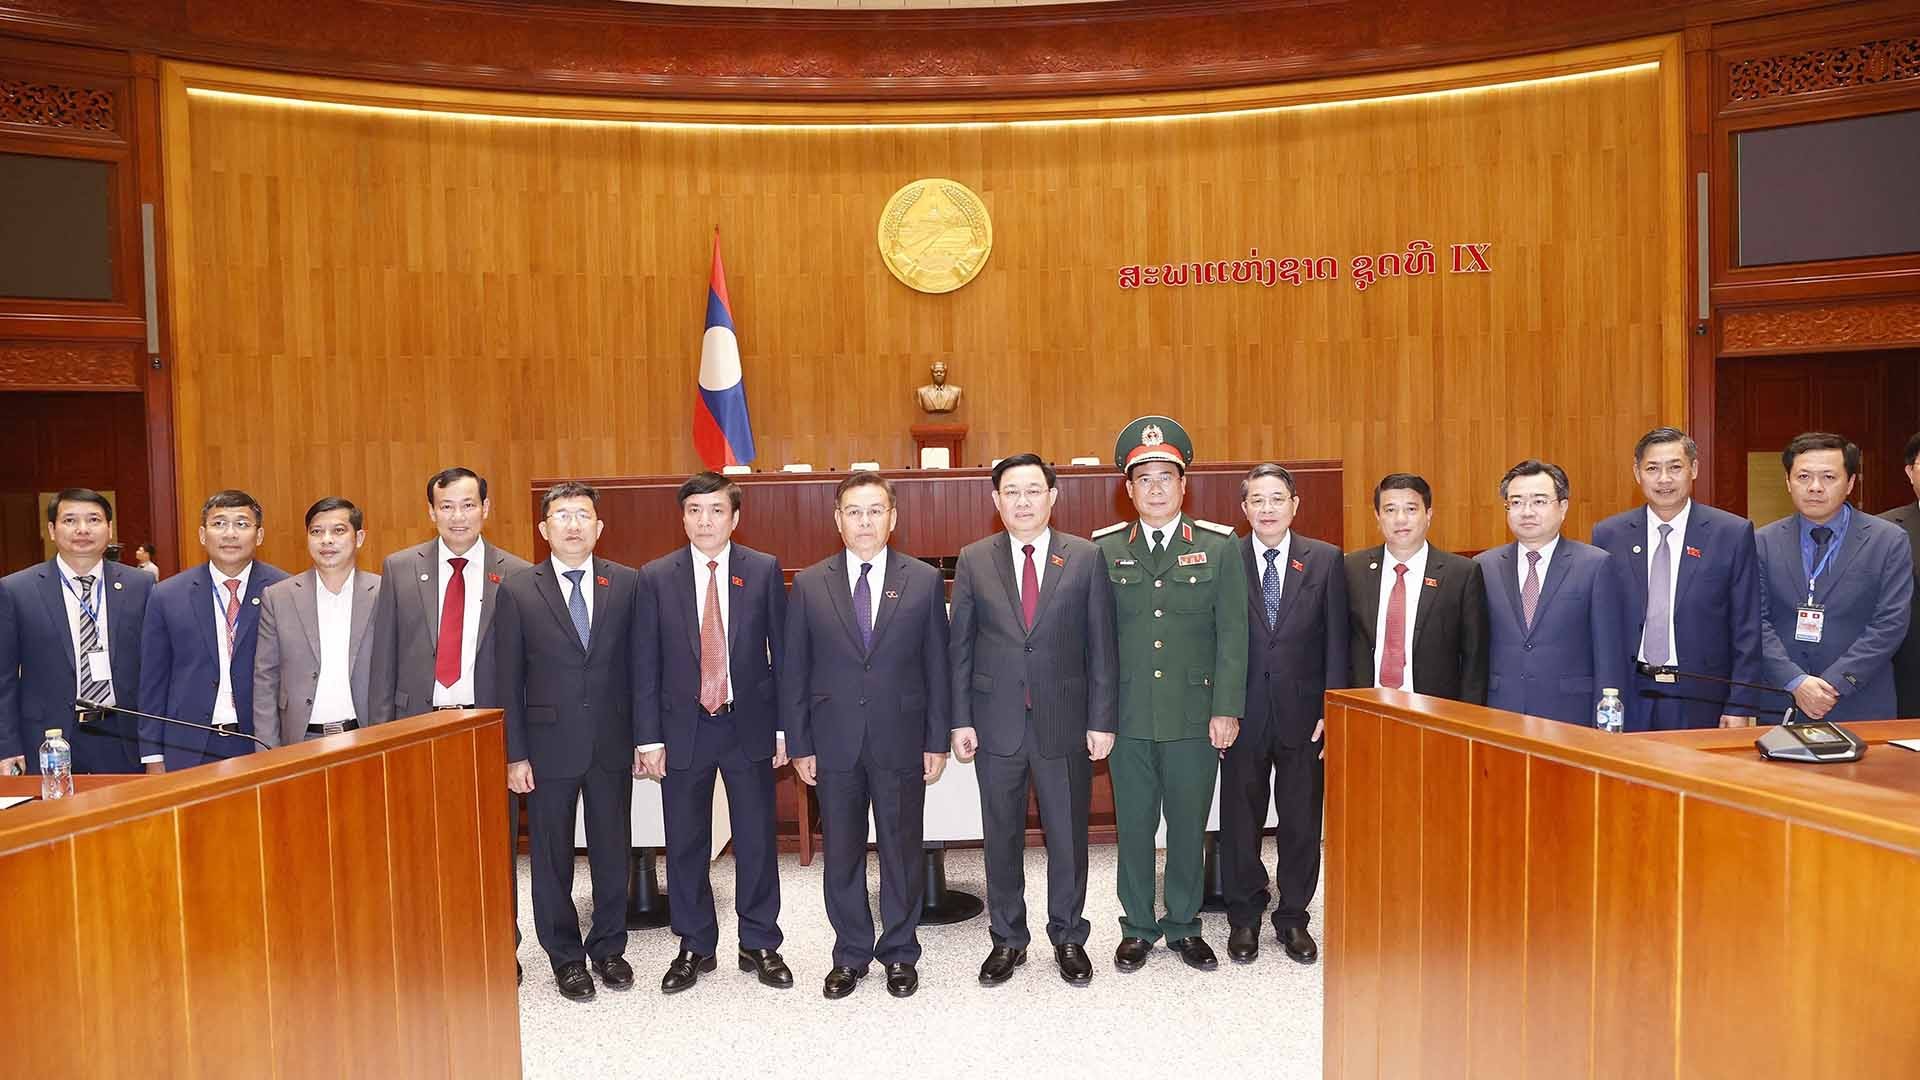 Chủ tịch Quốc hội Vương Đình Huệ và Chủ tịch Quốc hội Lào Saysomphone Phomvihane chụp ảnh chung với các đại biểu tại Nhà Quốc hội Lào. (Nguồn: TTXVN)